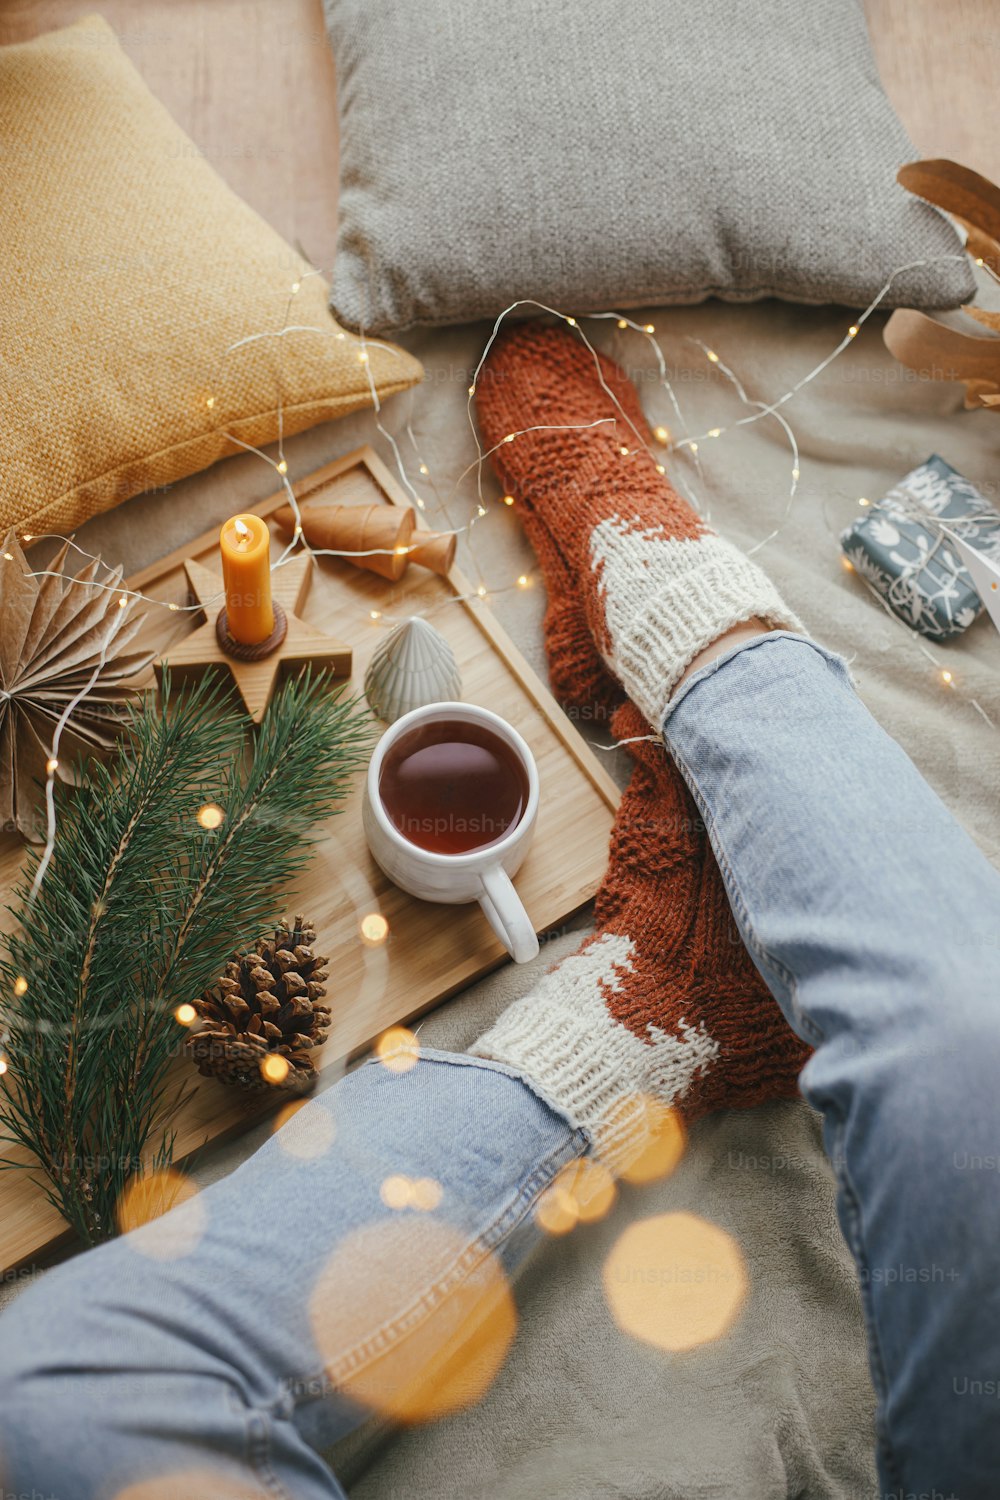 Piernas de mujer en calcetines cálidos sobre una manta suave con taza de té, estrellas de Navidad, luces doradas, árboles, velas y almohadas, vista superior. Momentos acogedores y relajantes en casa. Vacaciones de invierno y otoño.